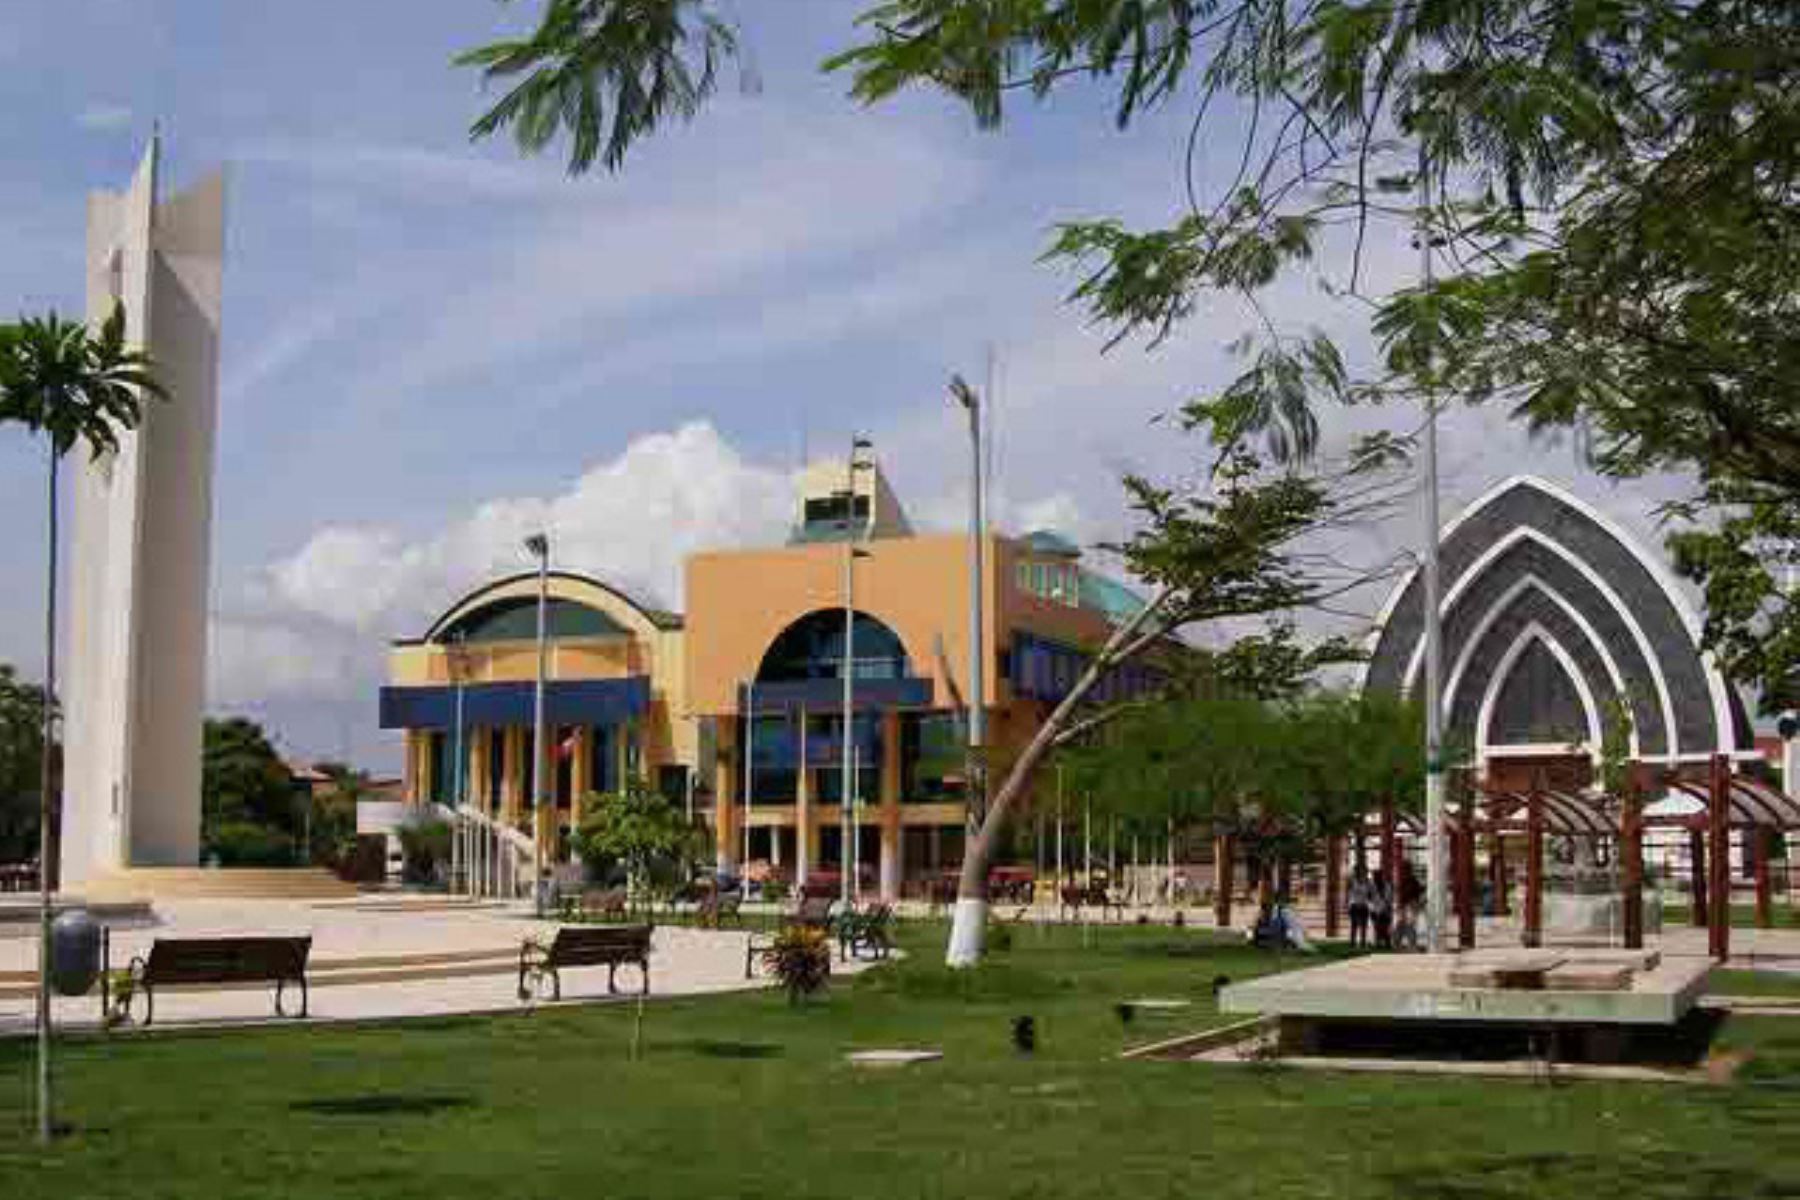 Plaza de la ciudad de Pucallpa, capital de la región Ucayali. Foto: ANDINA/difusión.